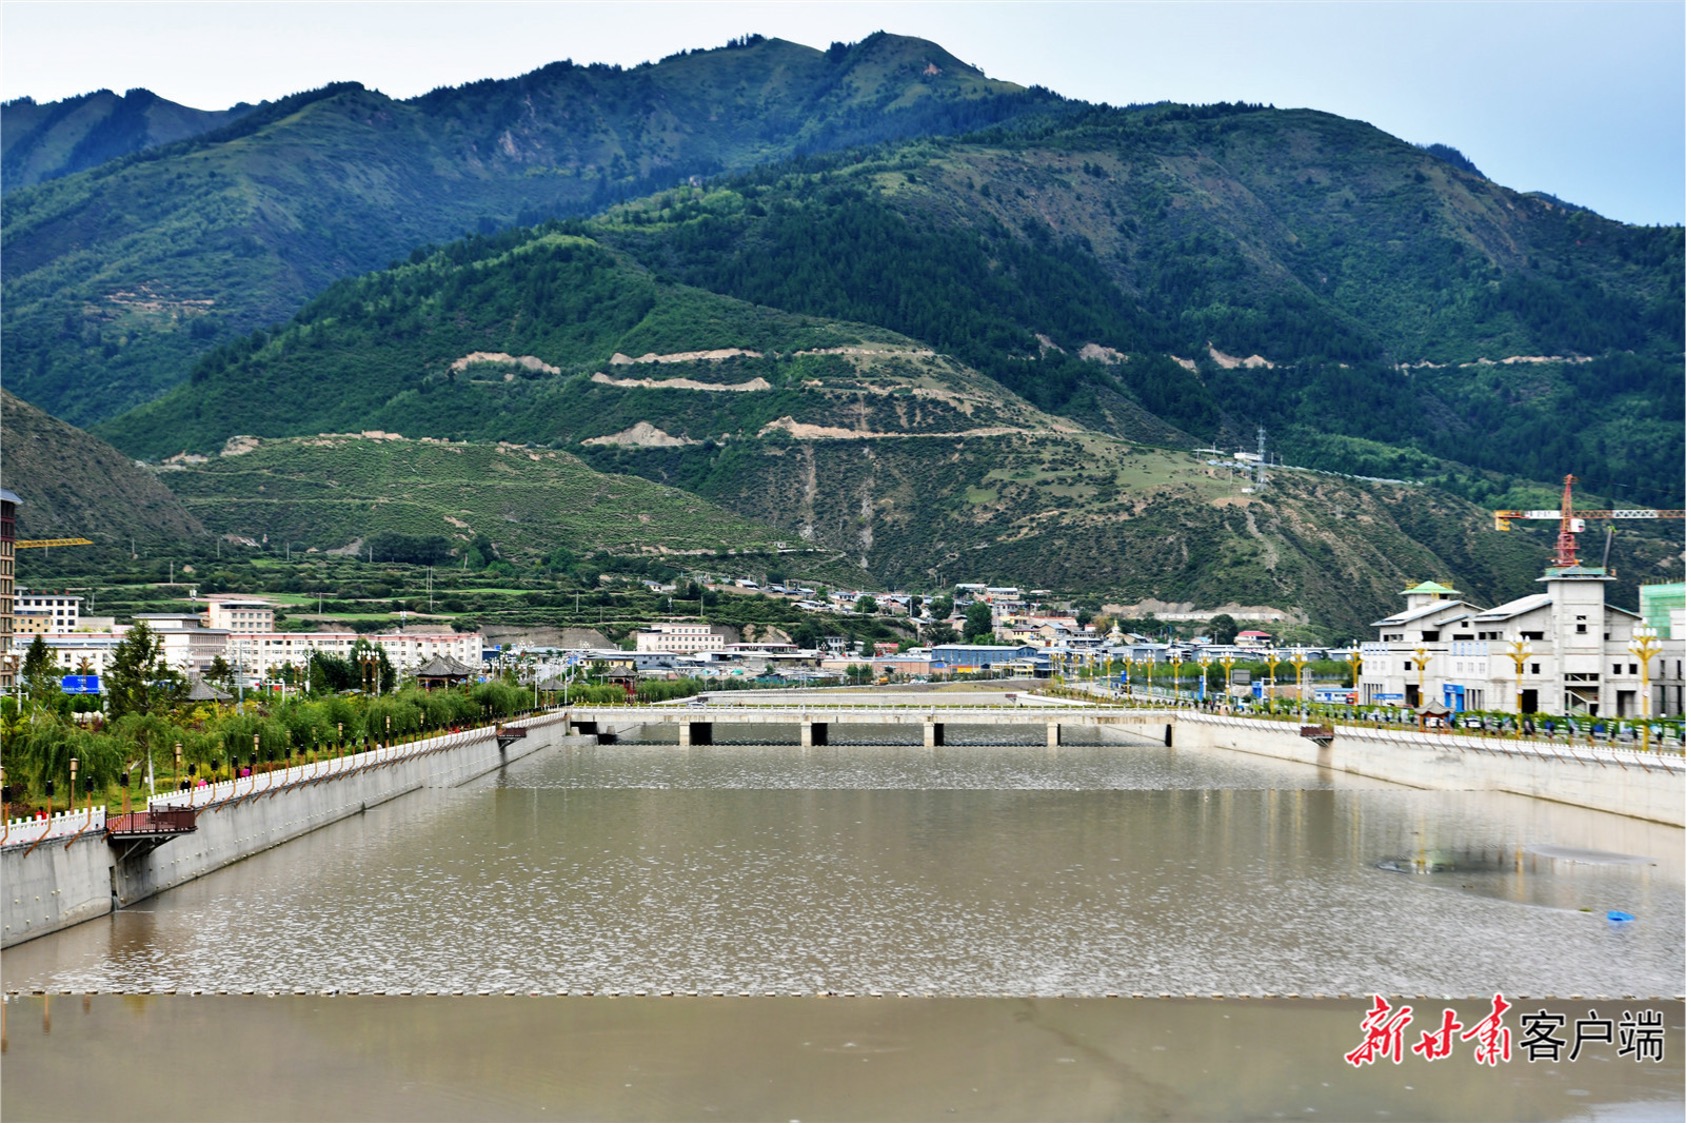 Villages along Bailongjiang in Diebu County, 2023. /Xinhua